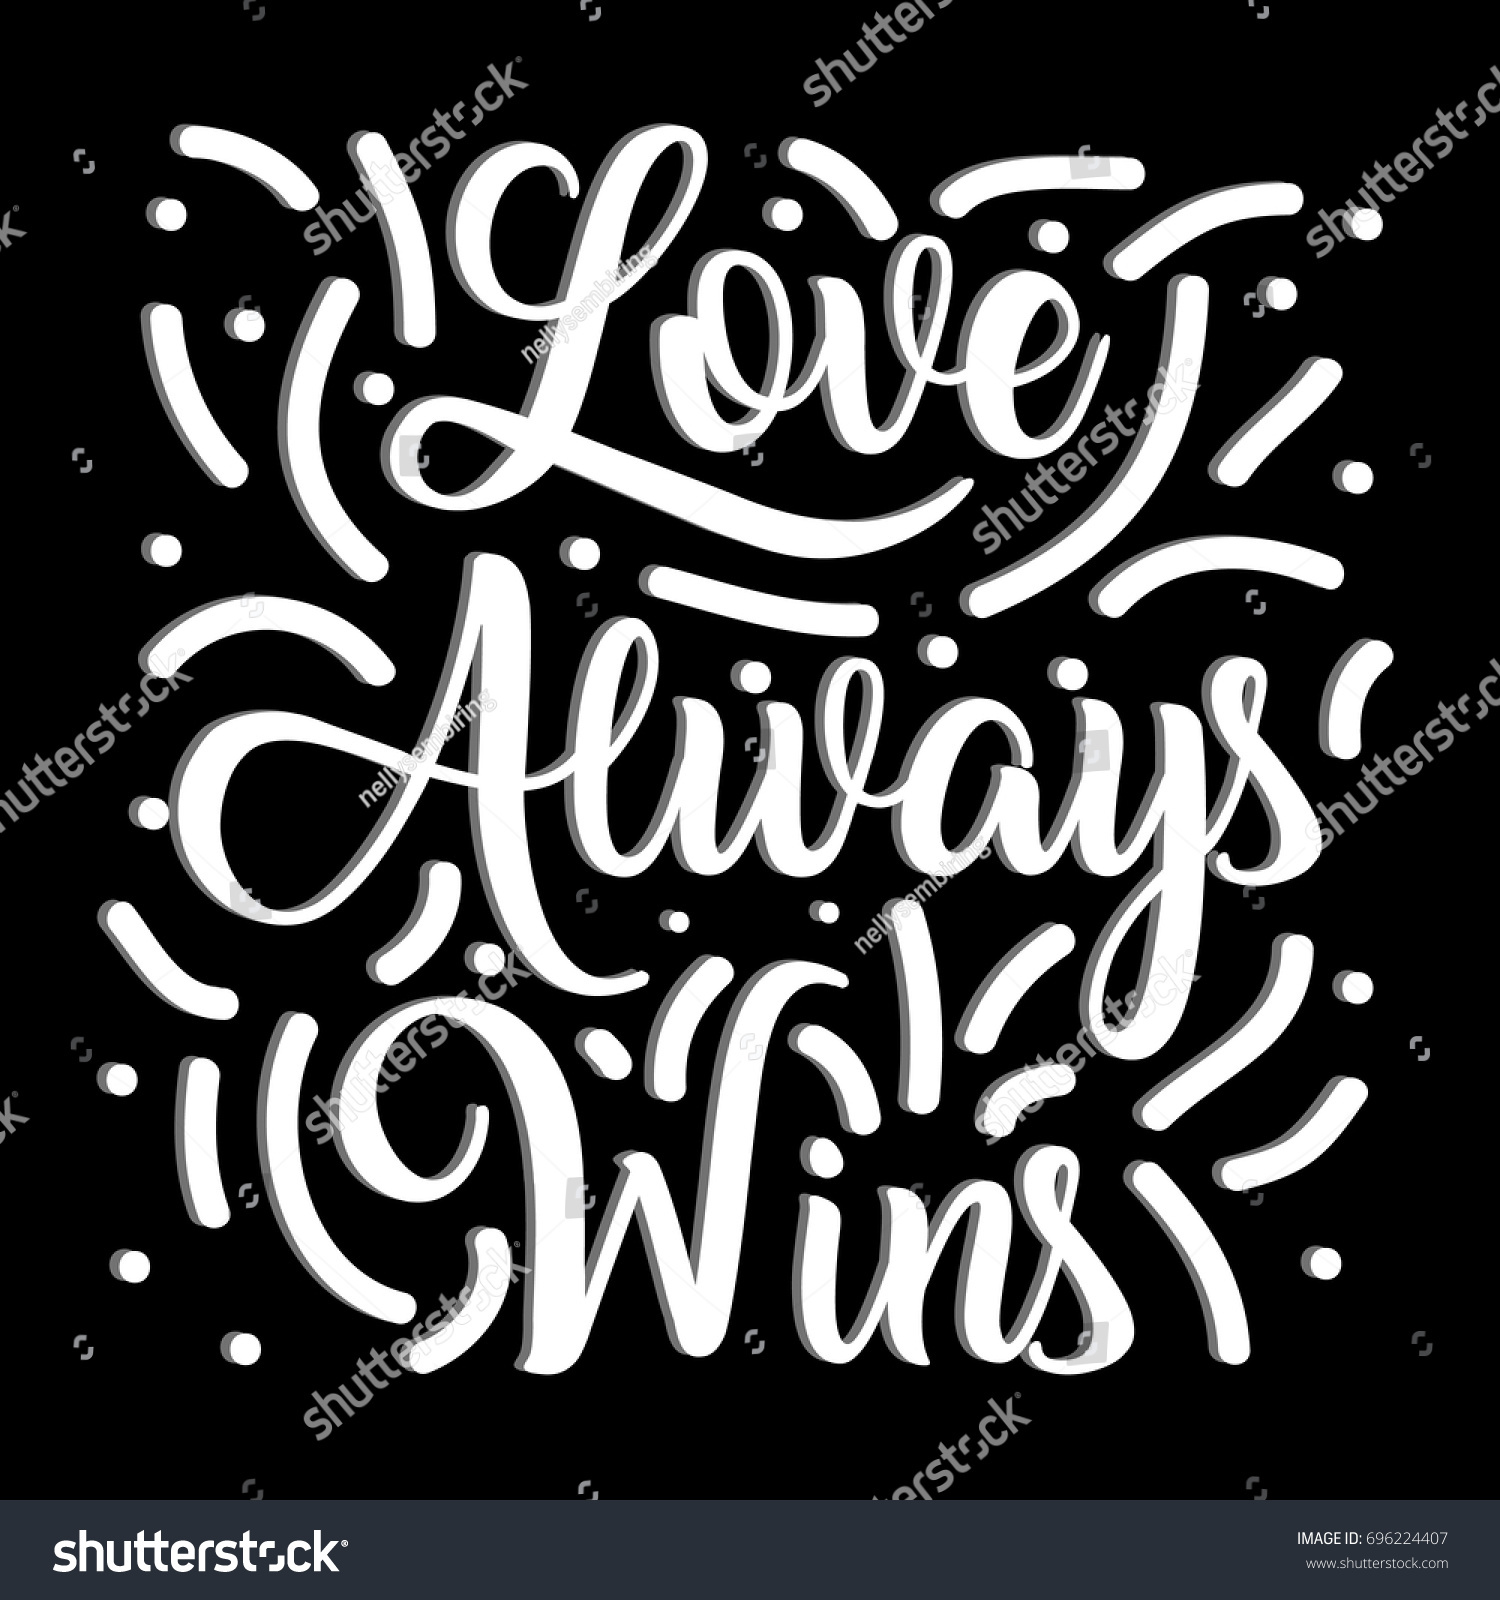 Download Love Always Wins Vector Illustration Hand Stock Vector 696224407 - Shutterstock